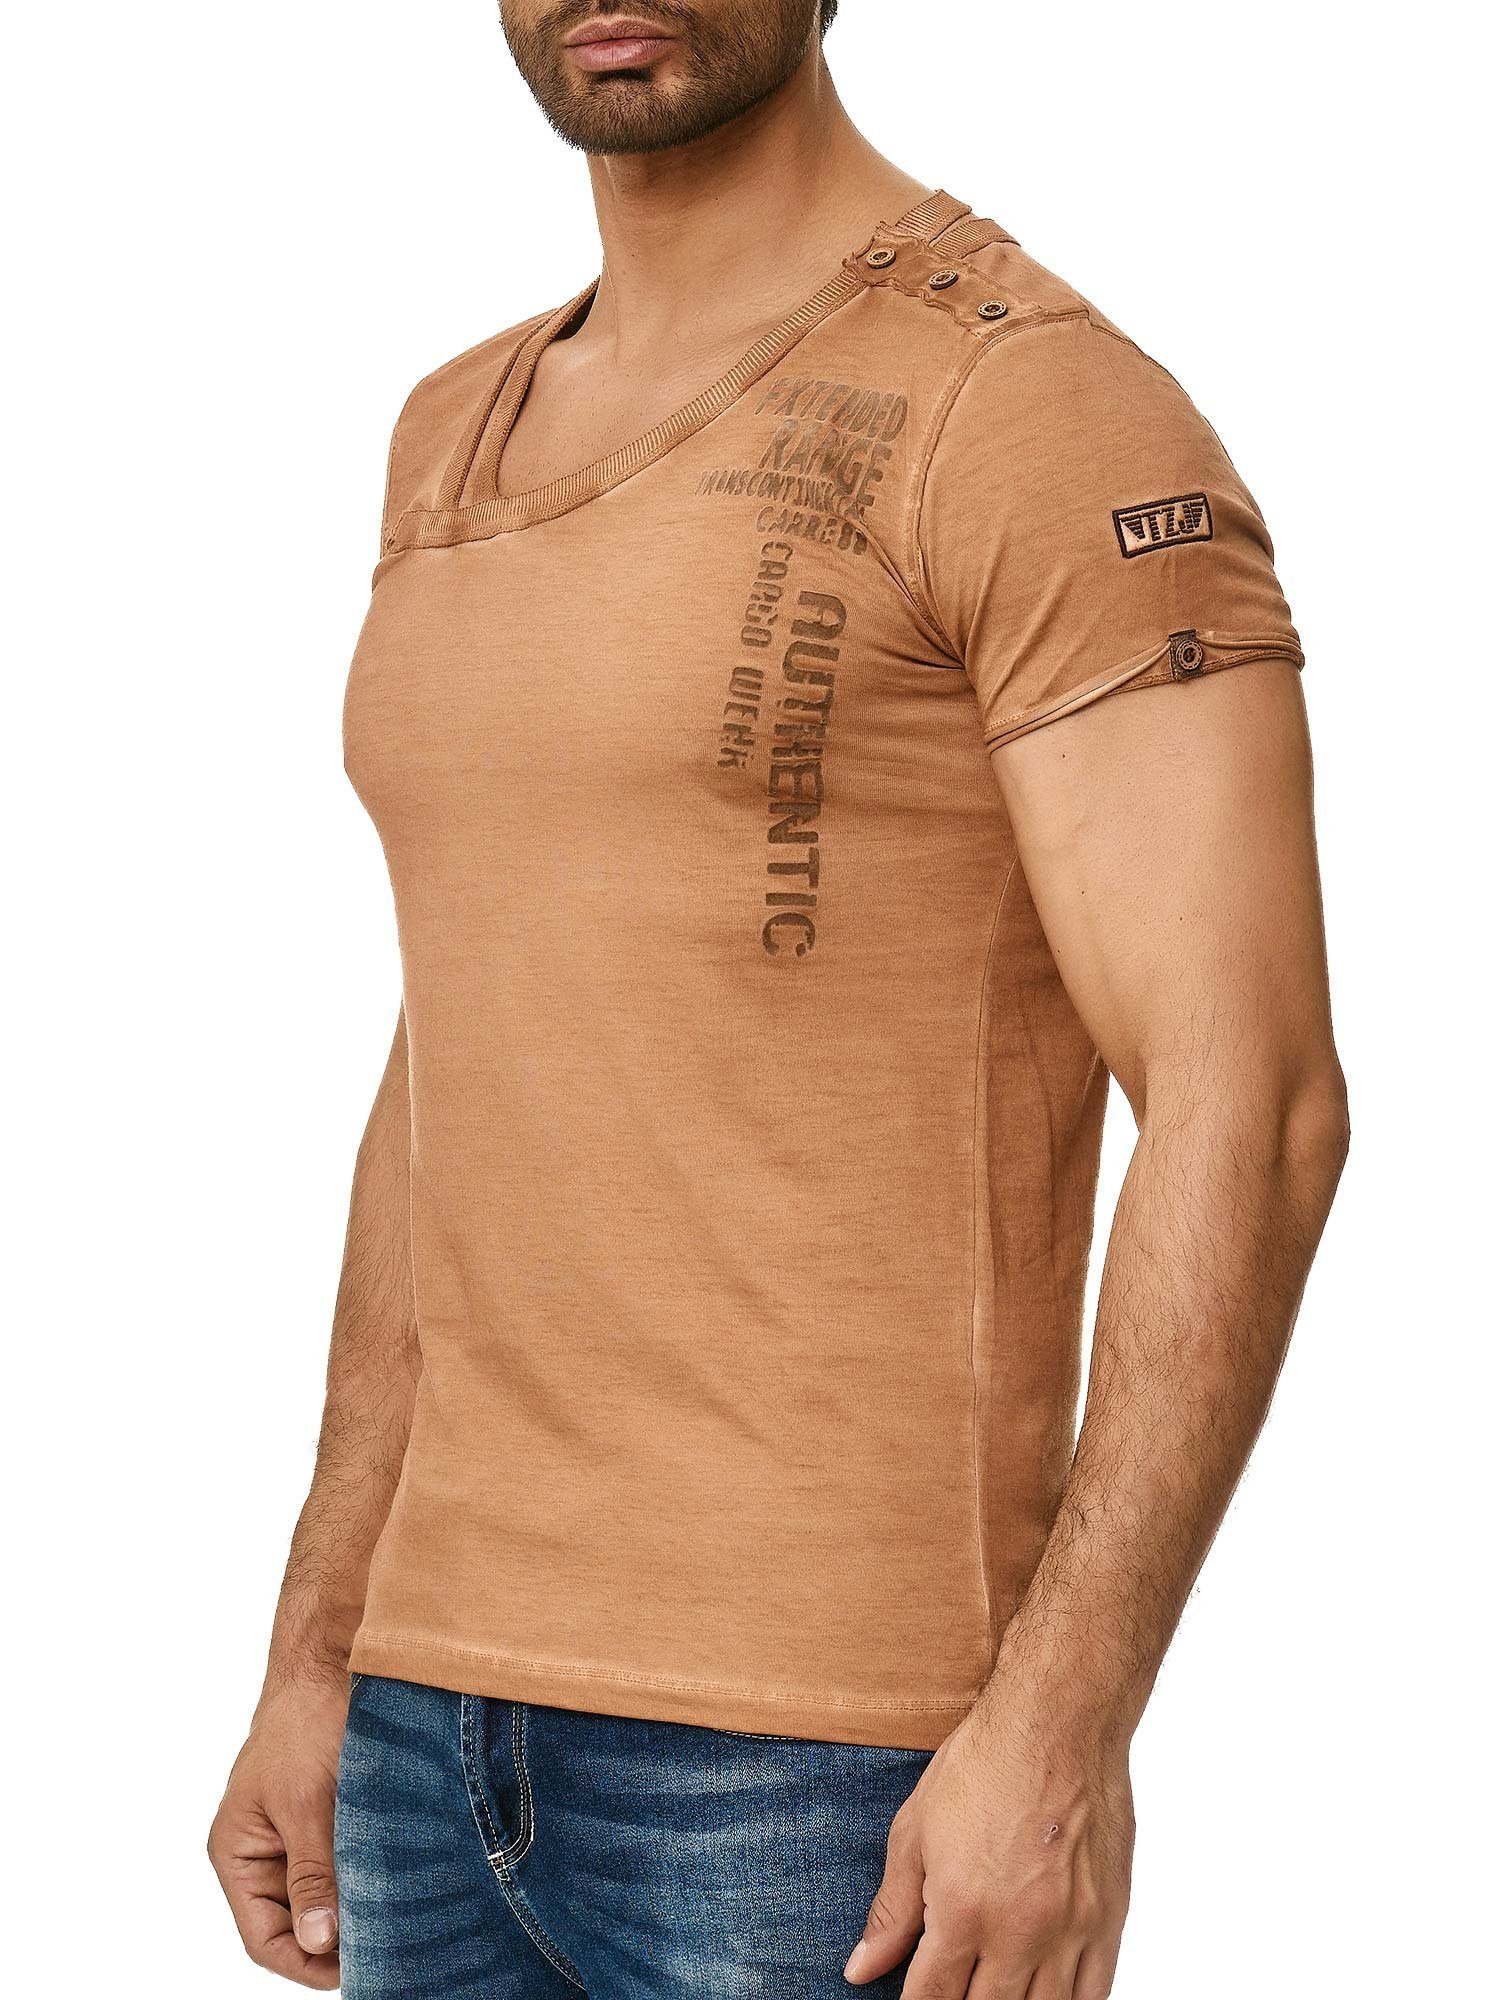 Tazzio T-Shirt 4022 in trendiger an Knopfleiste Ölwaschung der mit stylischem camel und Kragen Schulter